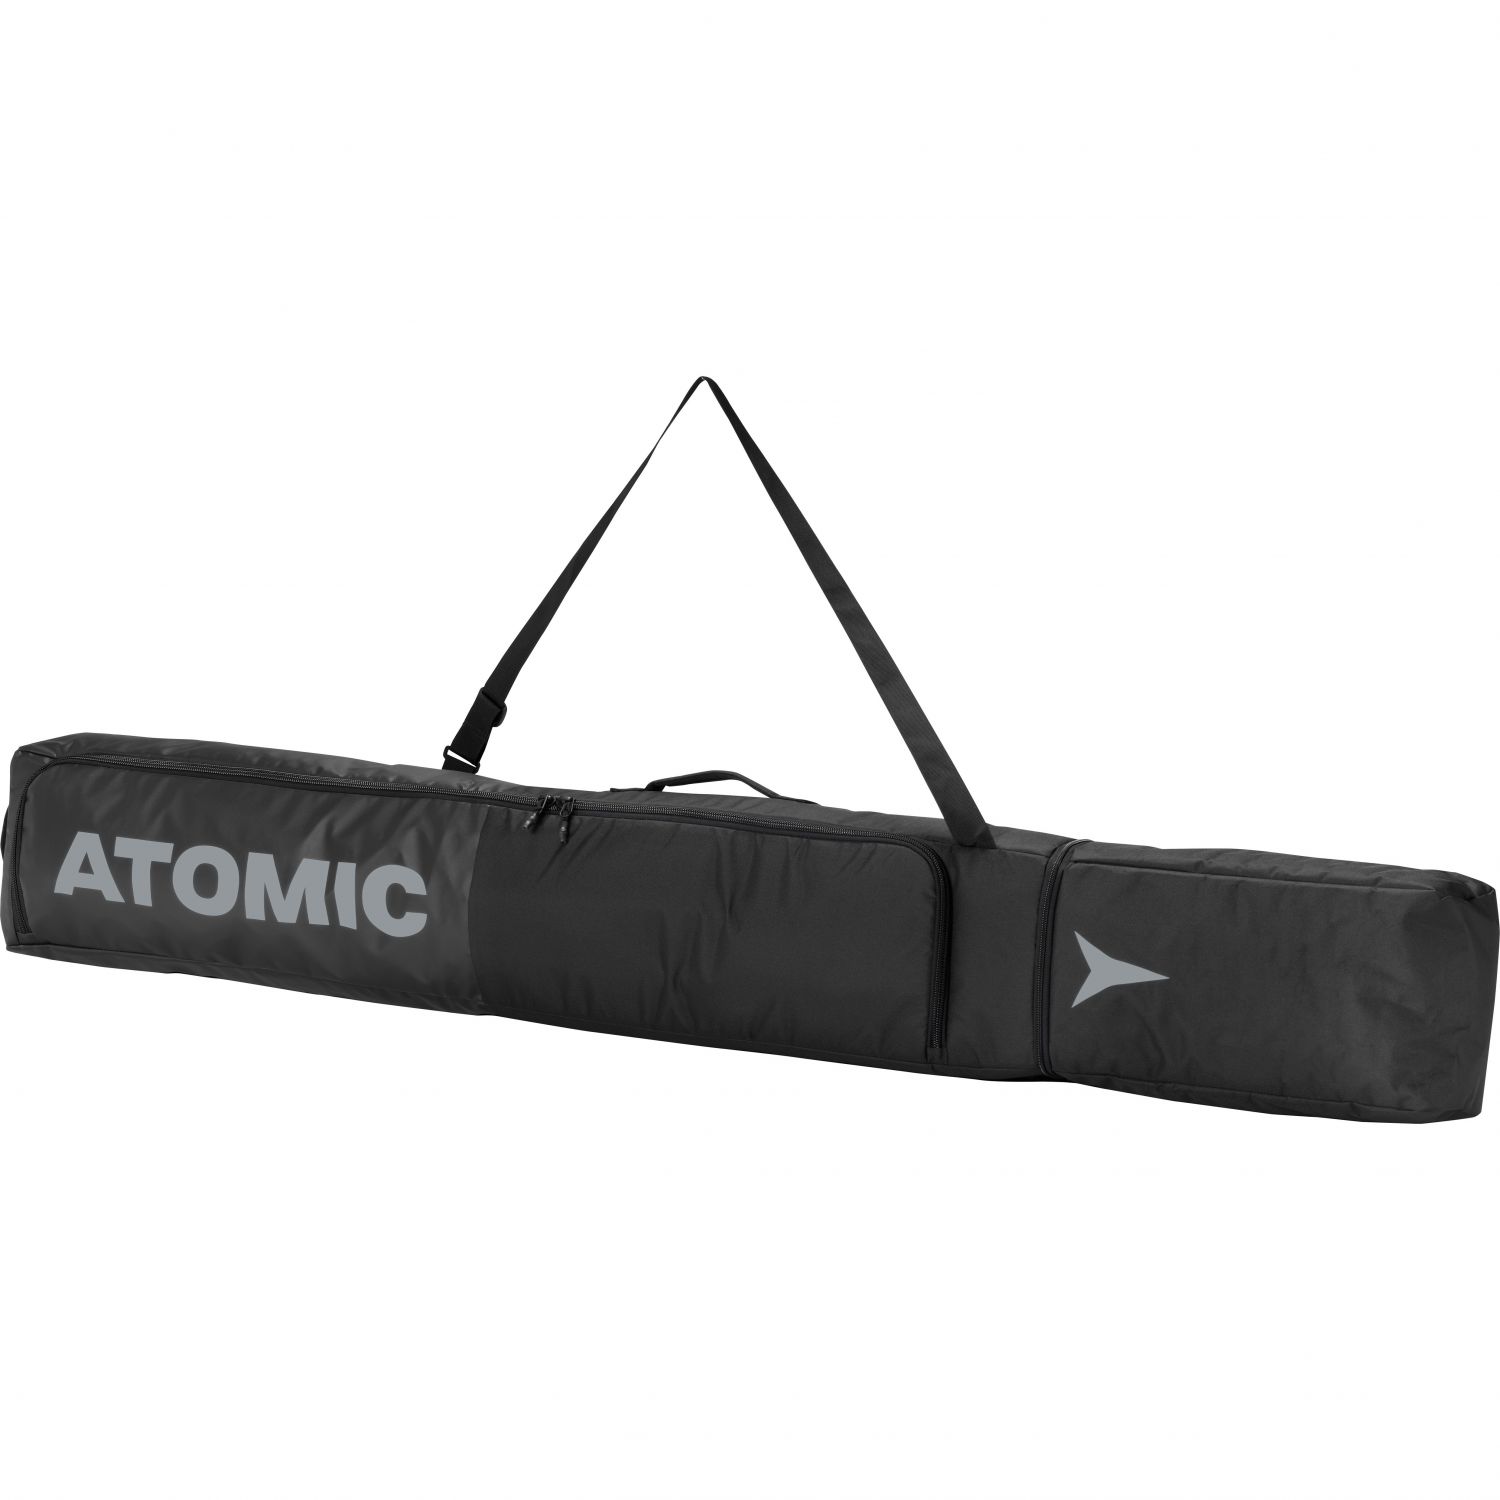 Atomic Ski Bag, black